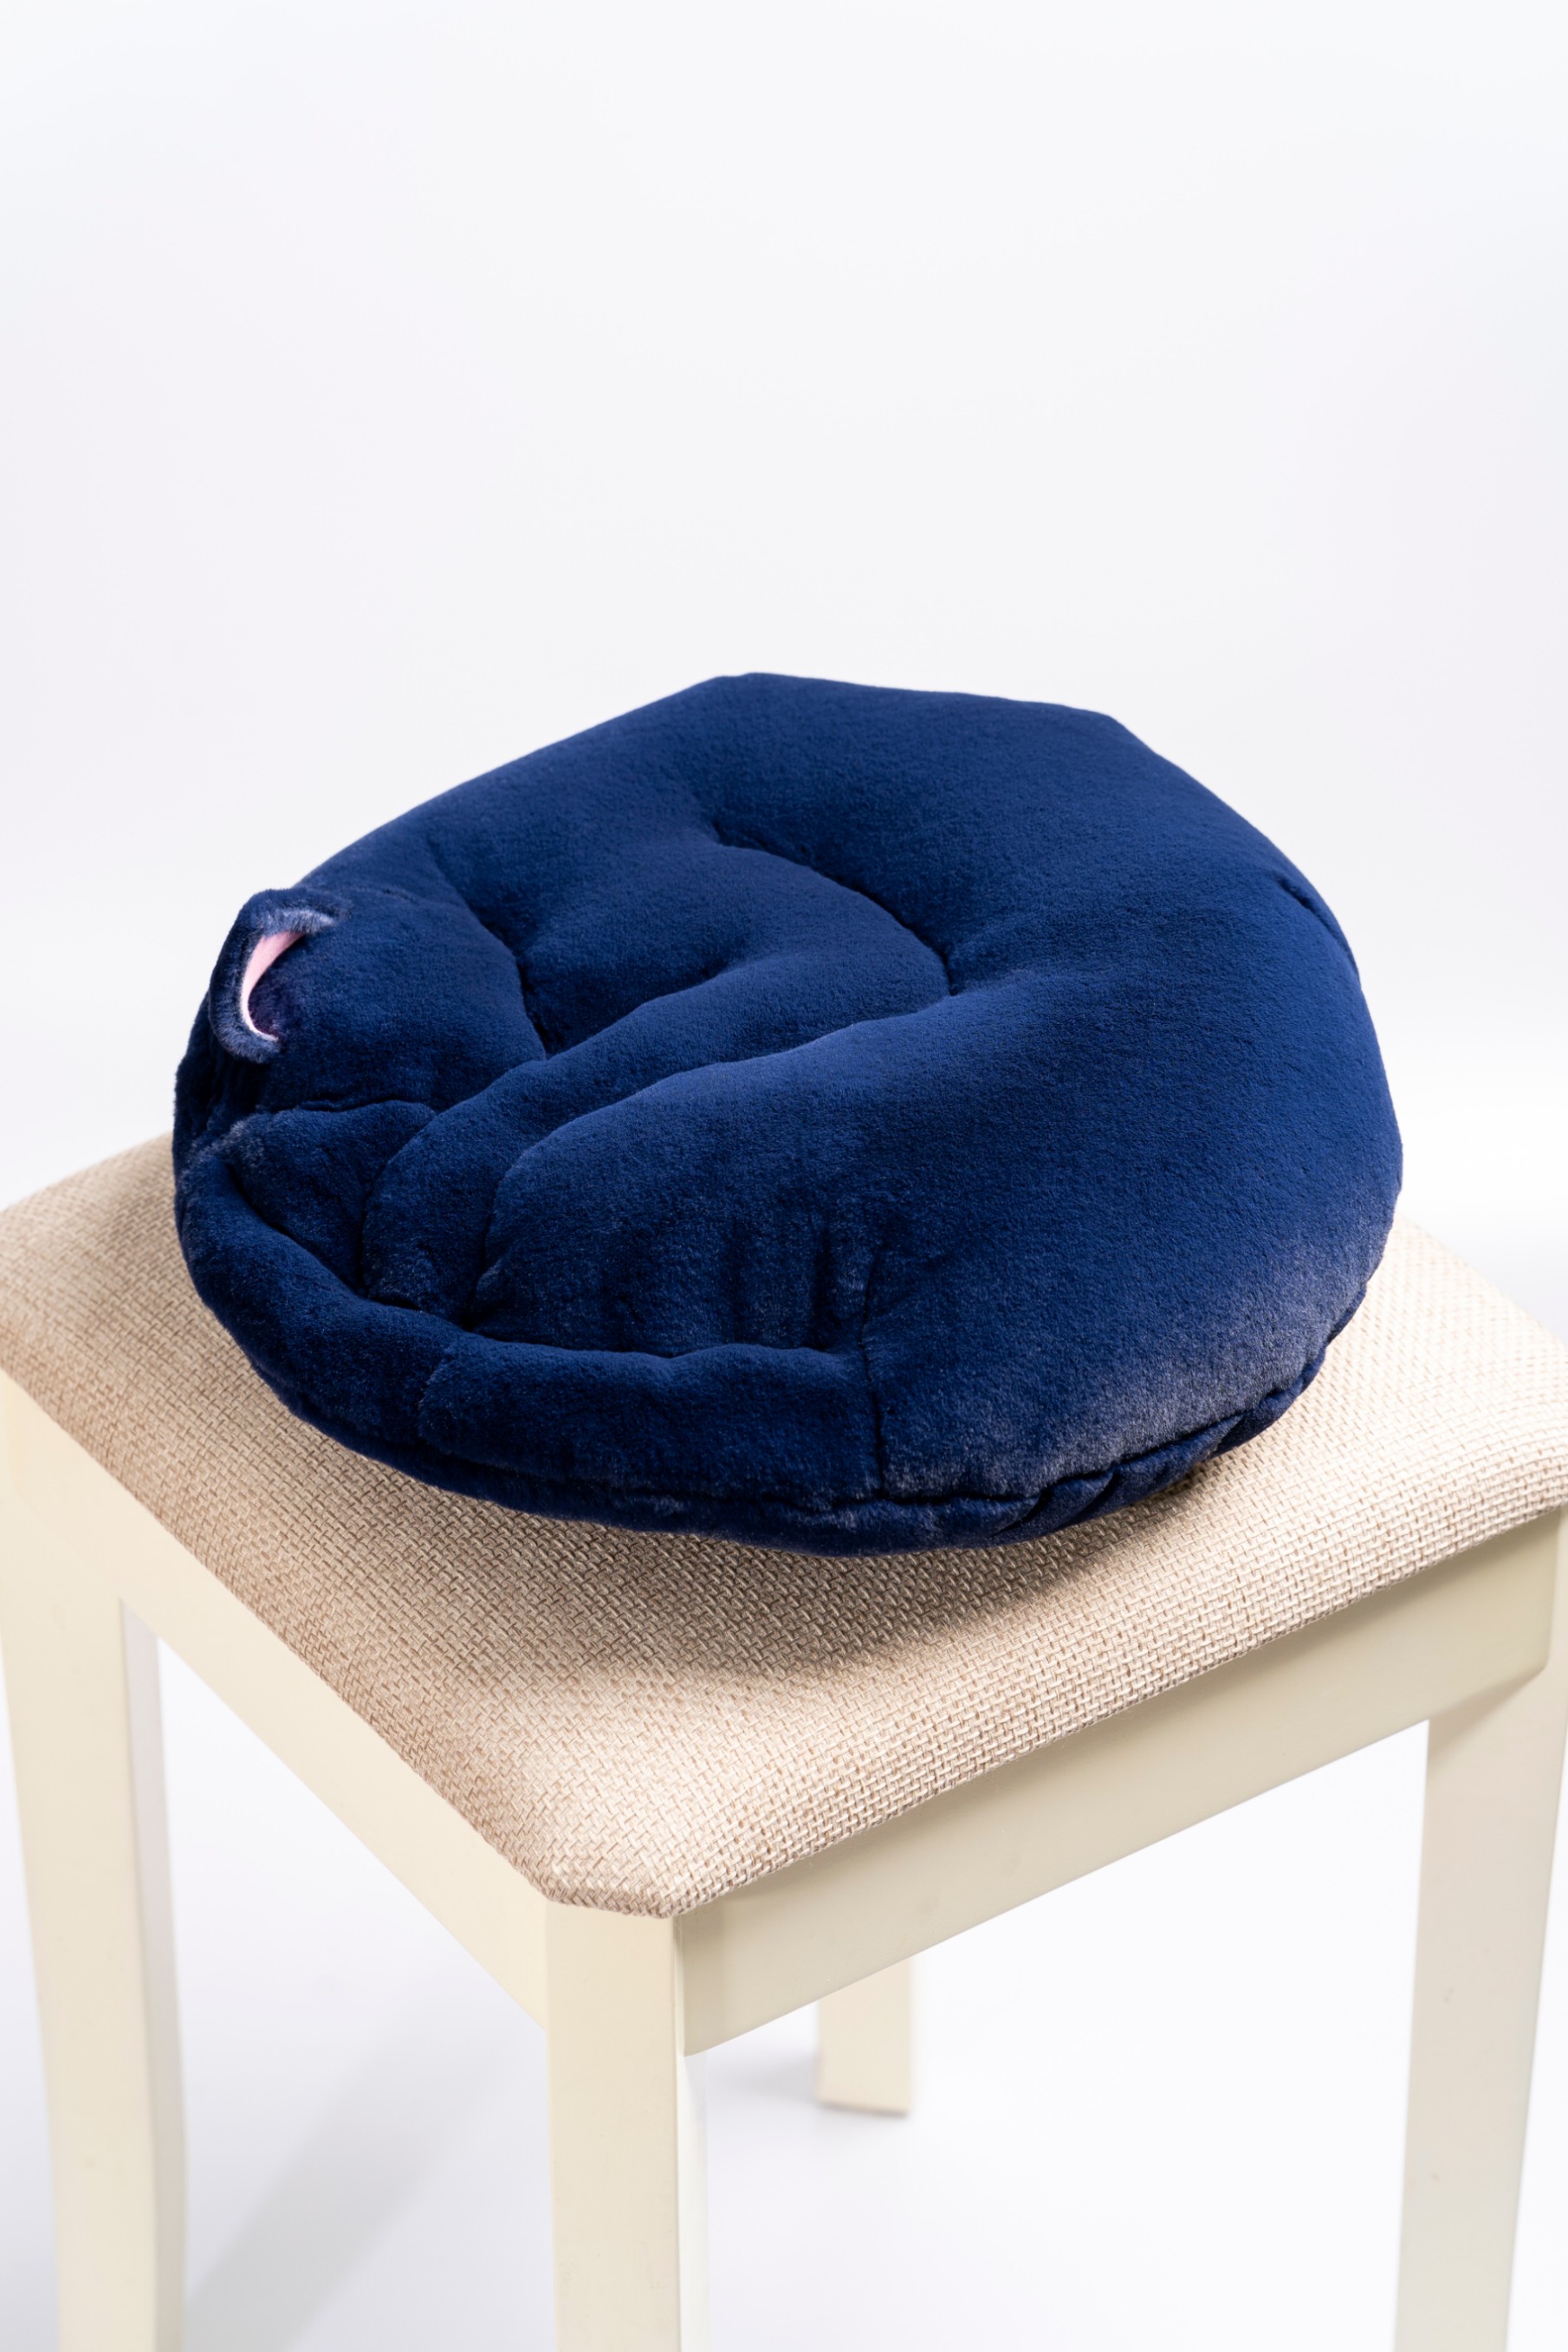 Подушка для котов. Подушка синий. Кресло из эко меха.